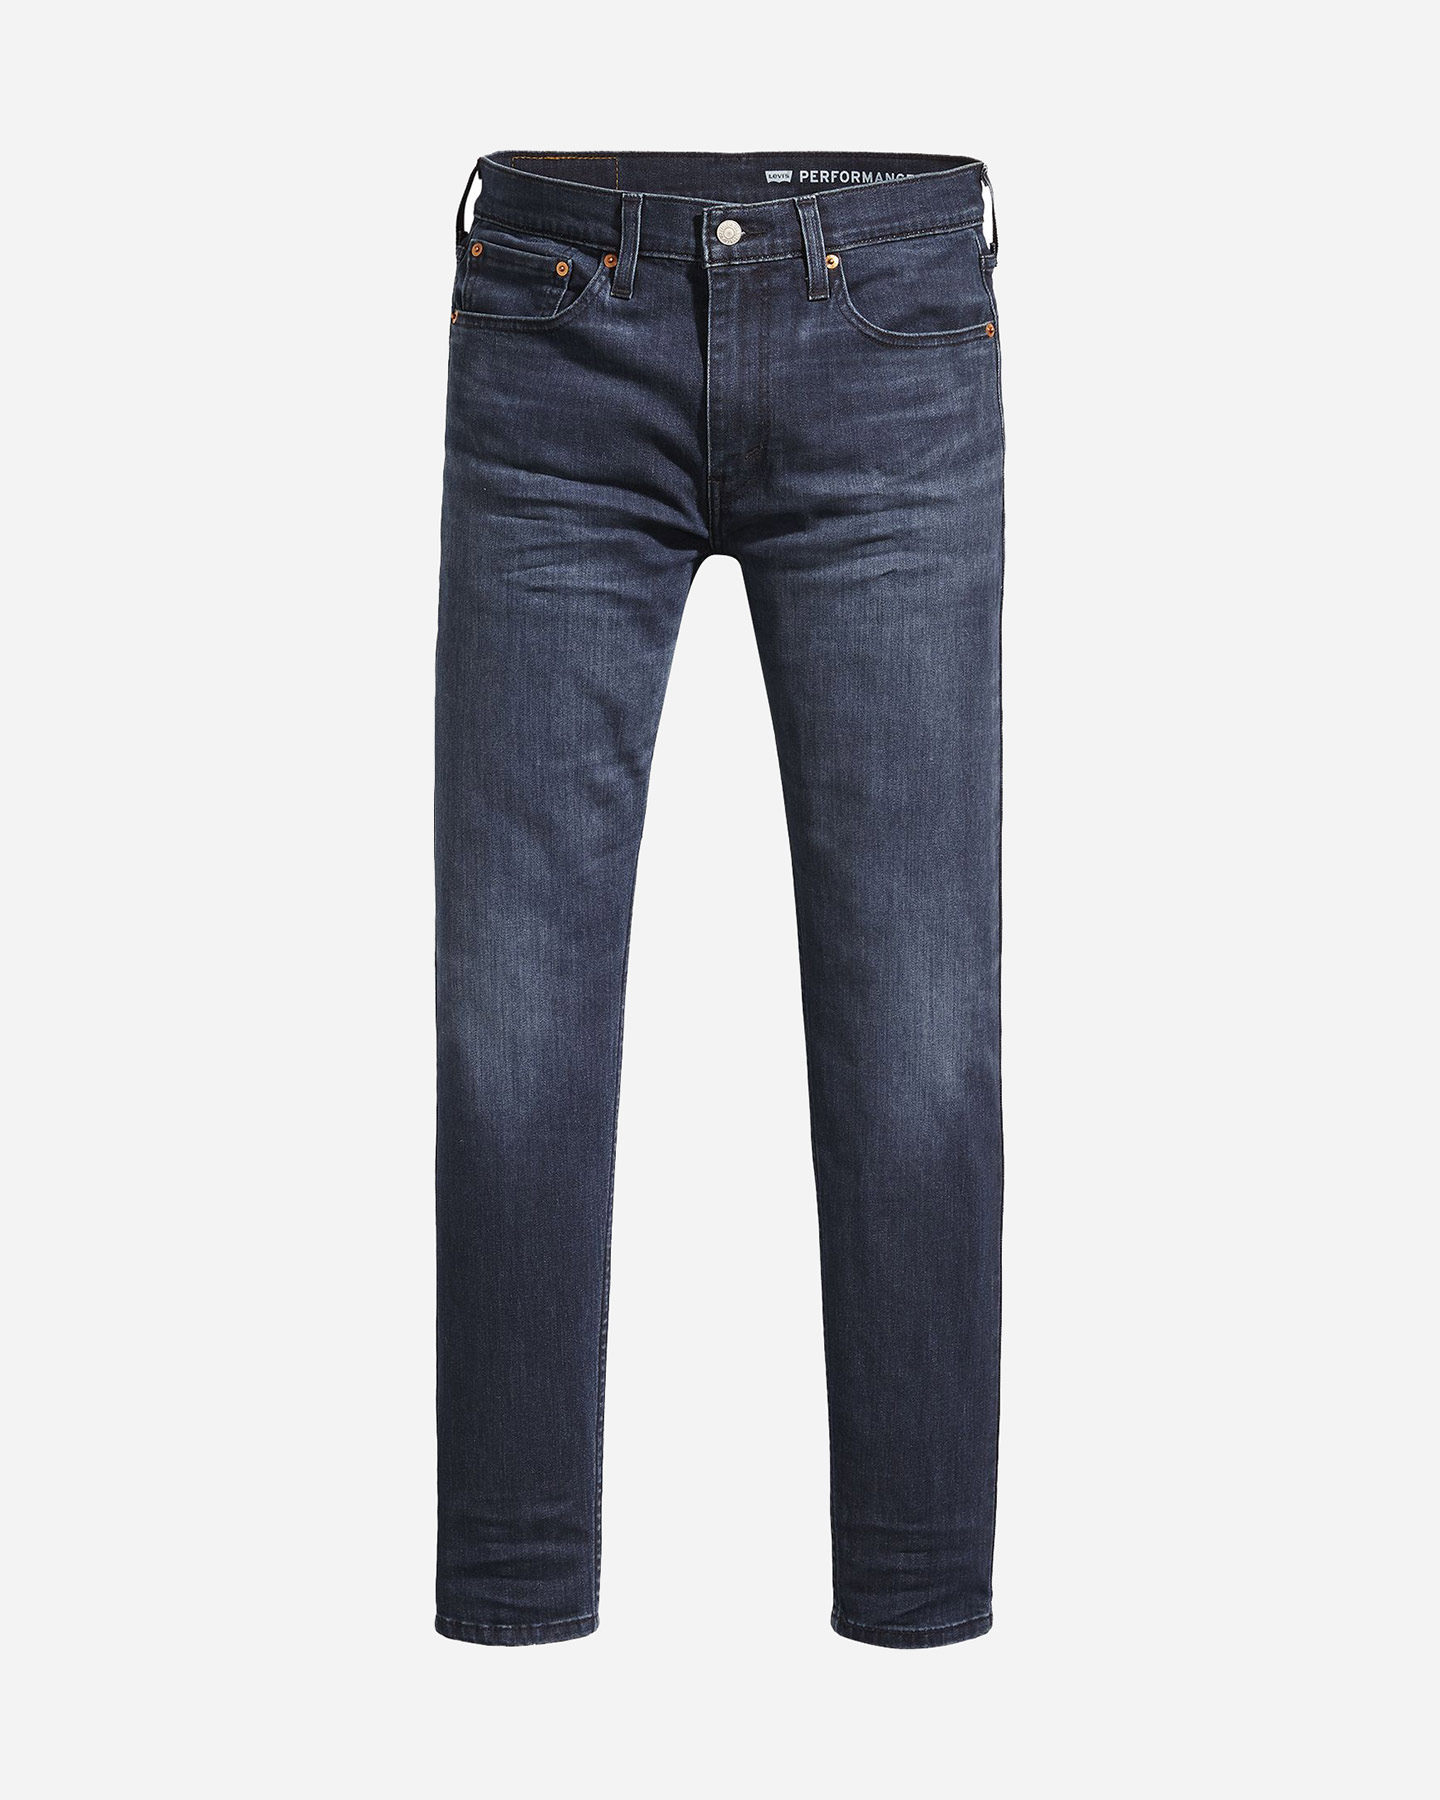 levi's 512 slim m - jeans - uomo